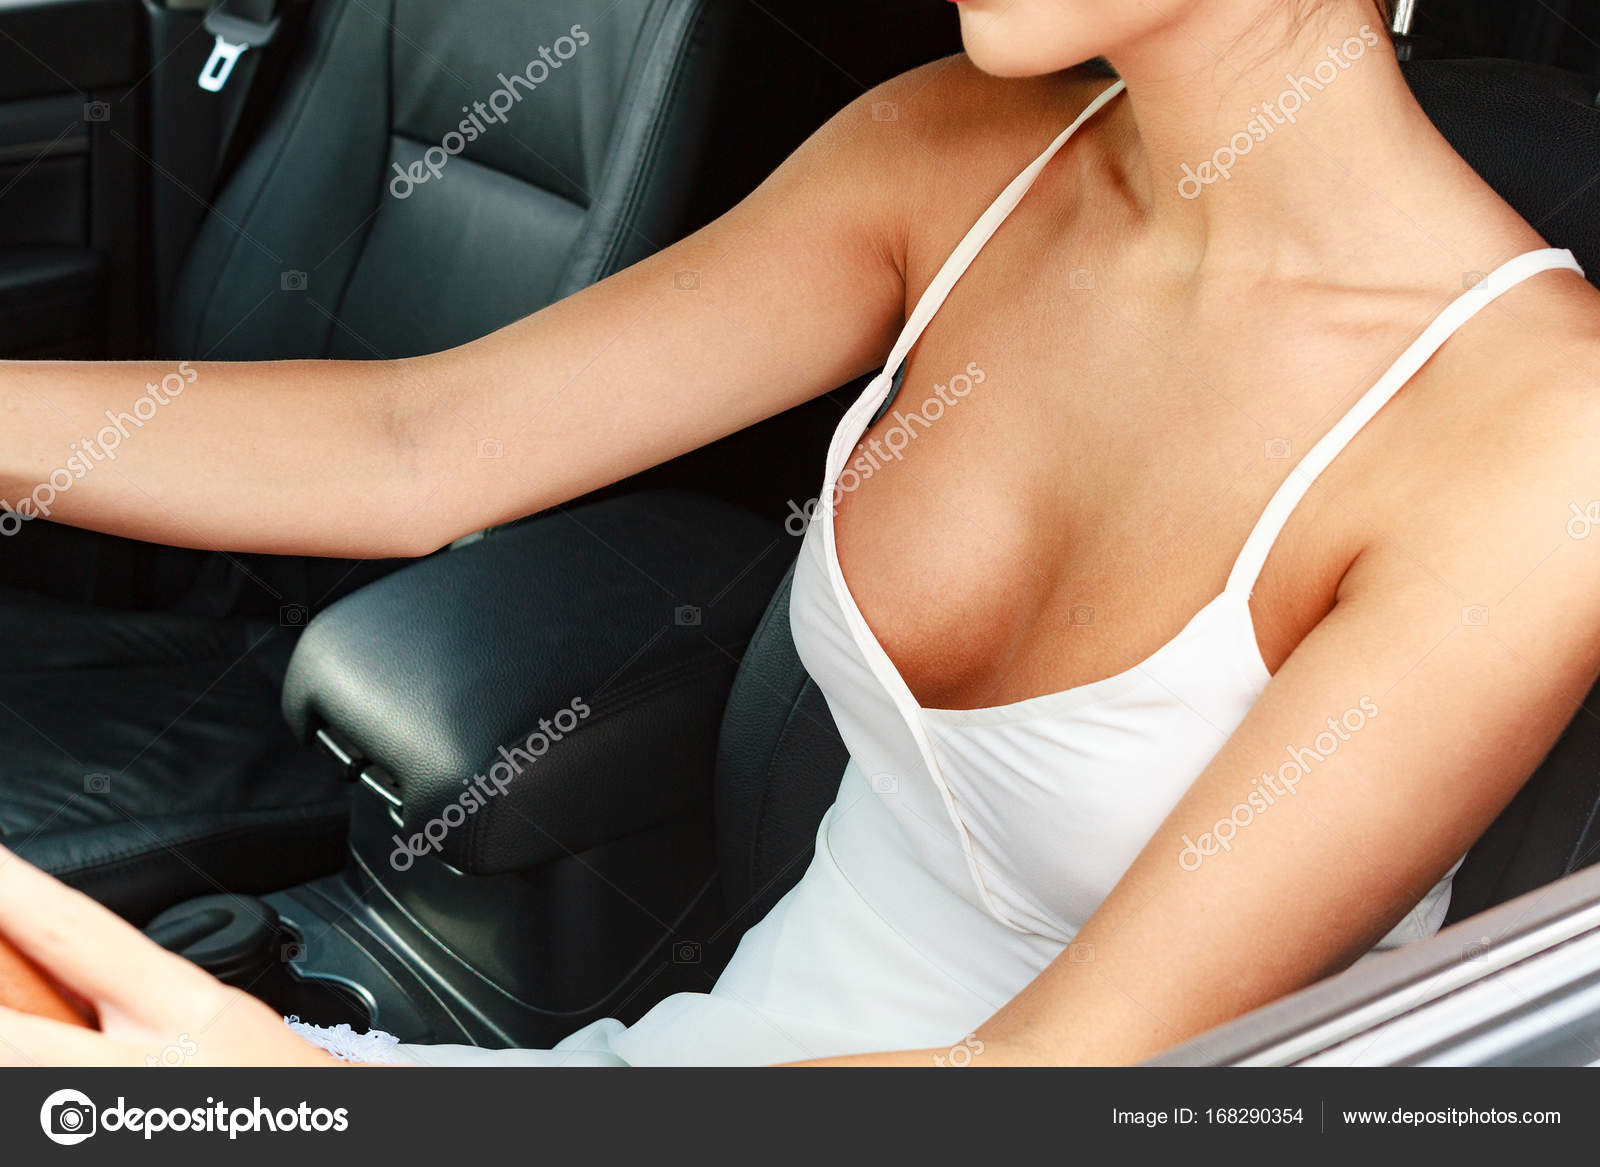 Sexy Fahrerin im Auto - Stockfotografie: lizenzfreie Fotos